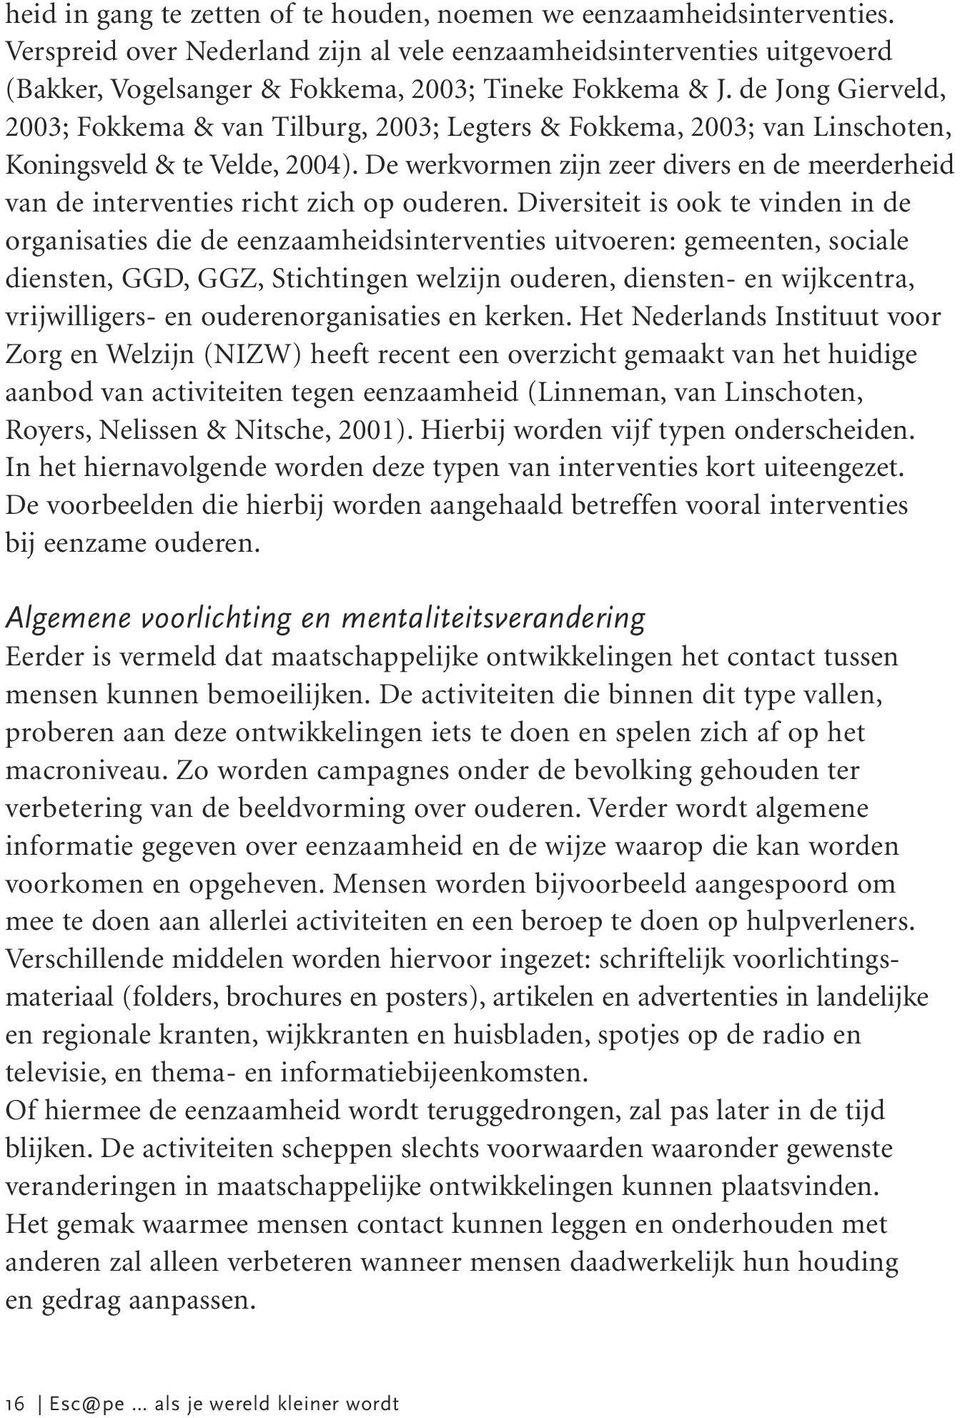 de Jong Gierveld, 2003; Fokkema & van Tilburg, 2003; Legters & Fokkema, 2003; van Linschoten, Koningsveld & te Velde, 2004).